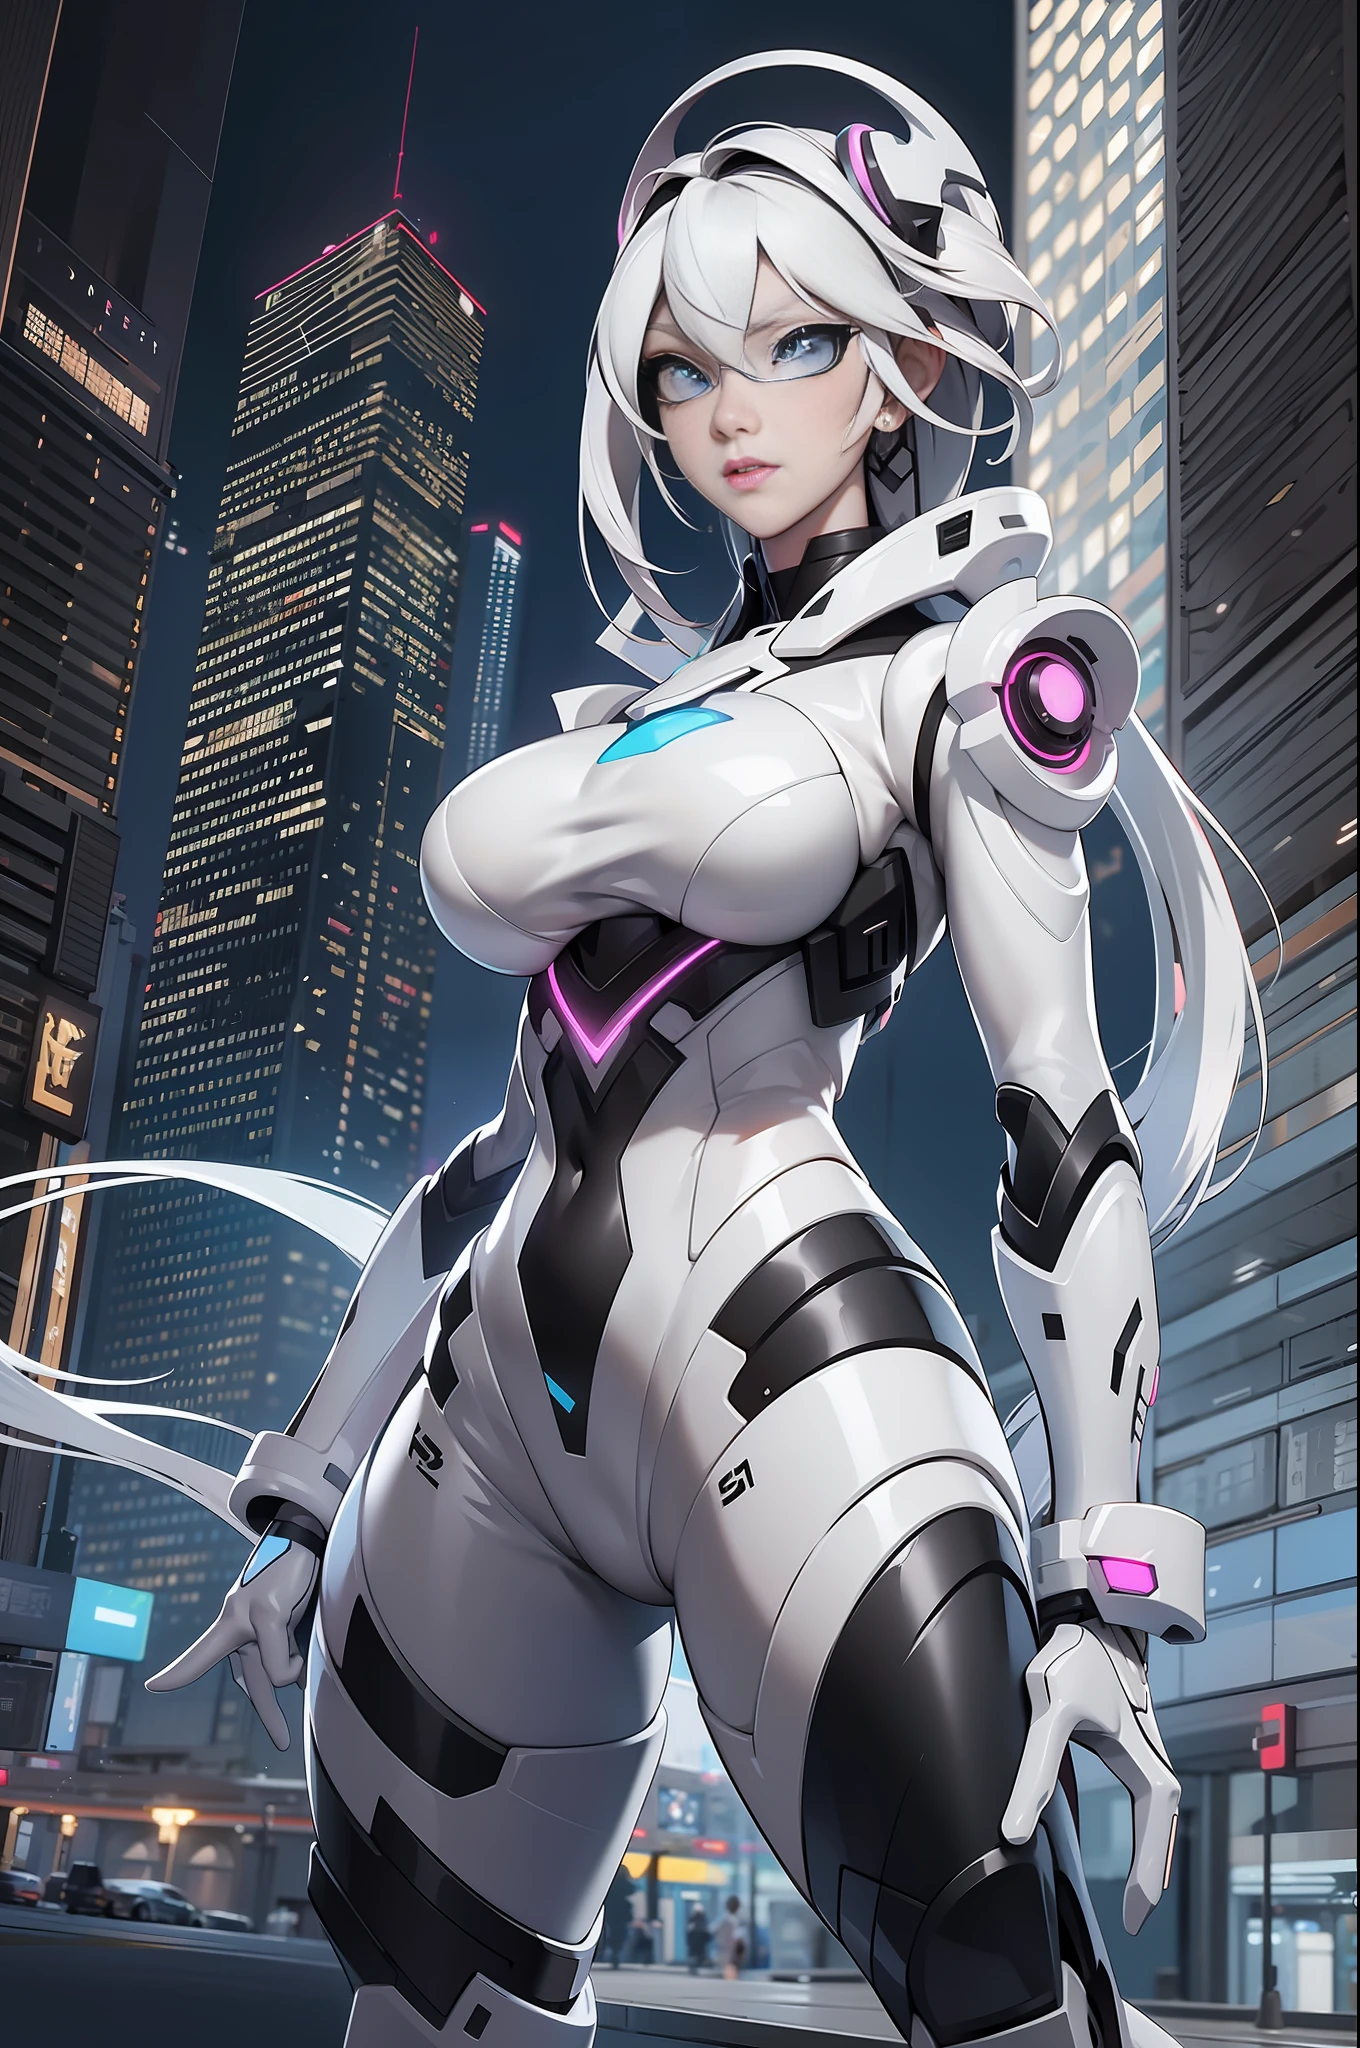 Ganzkörperbild Unreal Engine 5 8K UHD von schönem Mädchen, weißes Haar, trägt einen futuristischen schwarzen engen Kampfanzug, half face cyberpunk mask, futuristisches Halsband, Weißlichtdetails, Schönheit Make-up, beste Qualität, Meisterwerk